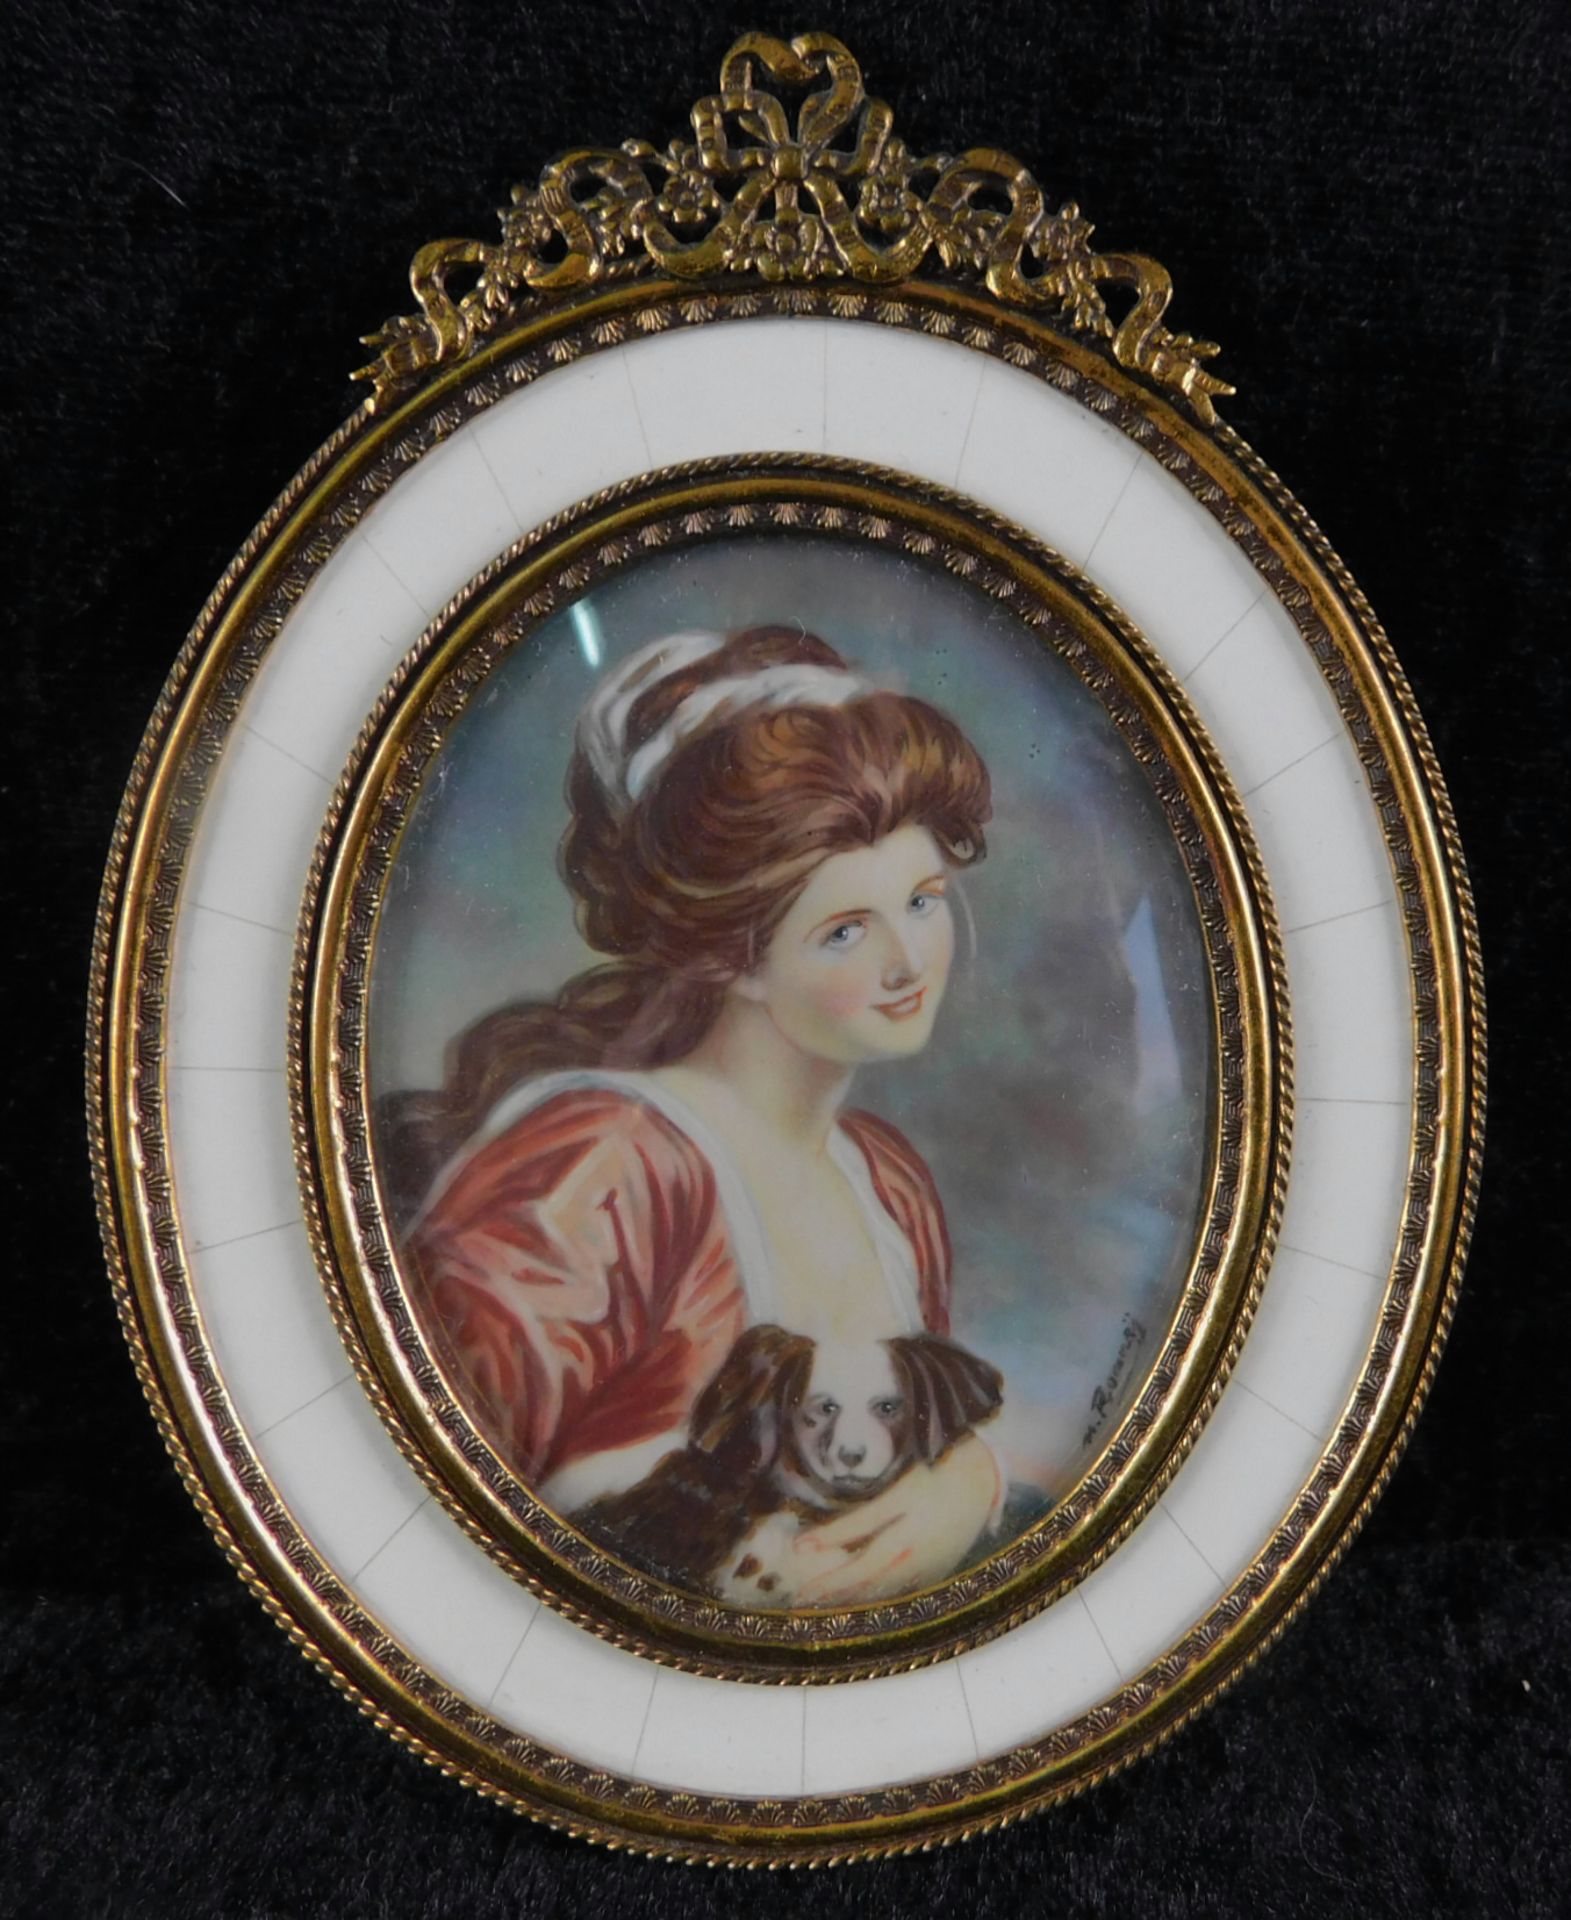 Miniatur, Porträt mit Hund, Ölmalerei in ovaler Elfenbein- Messingrahmung, 14 x 10,5 cm<br